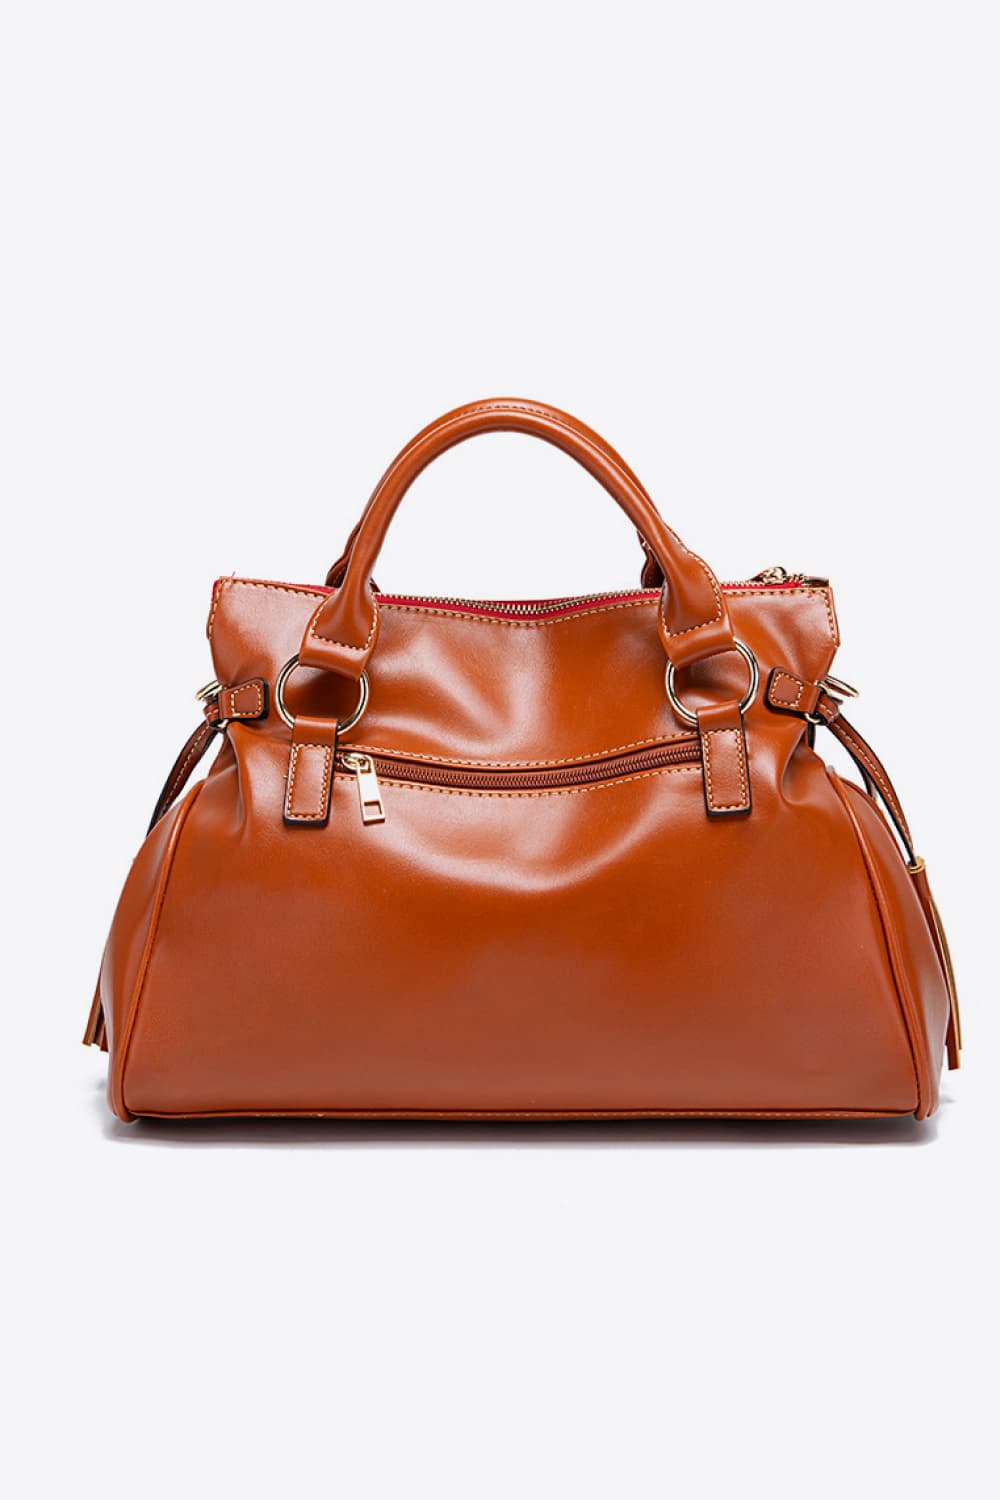 PU Leather Handbag with Tassels - Thandynie